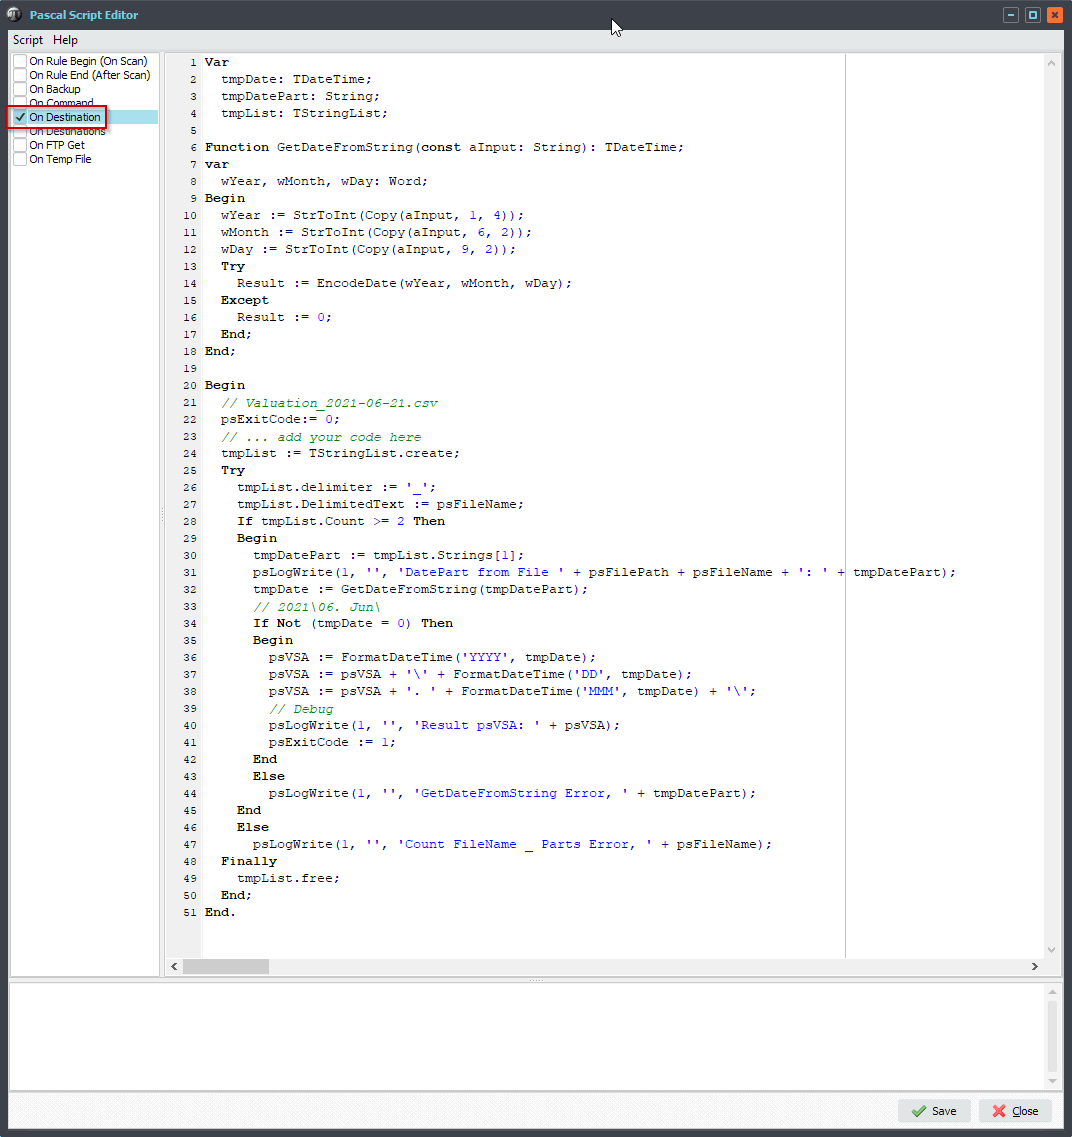 Limagito File Mover Pascal Script